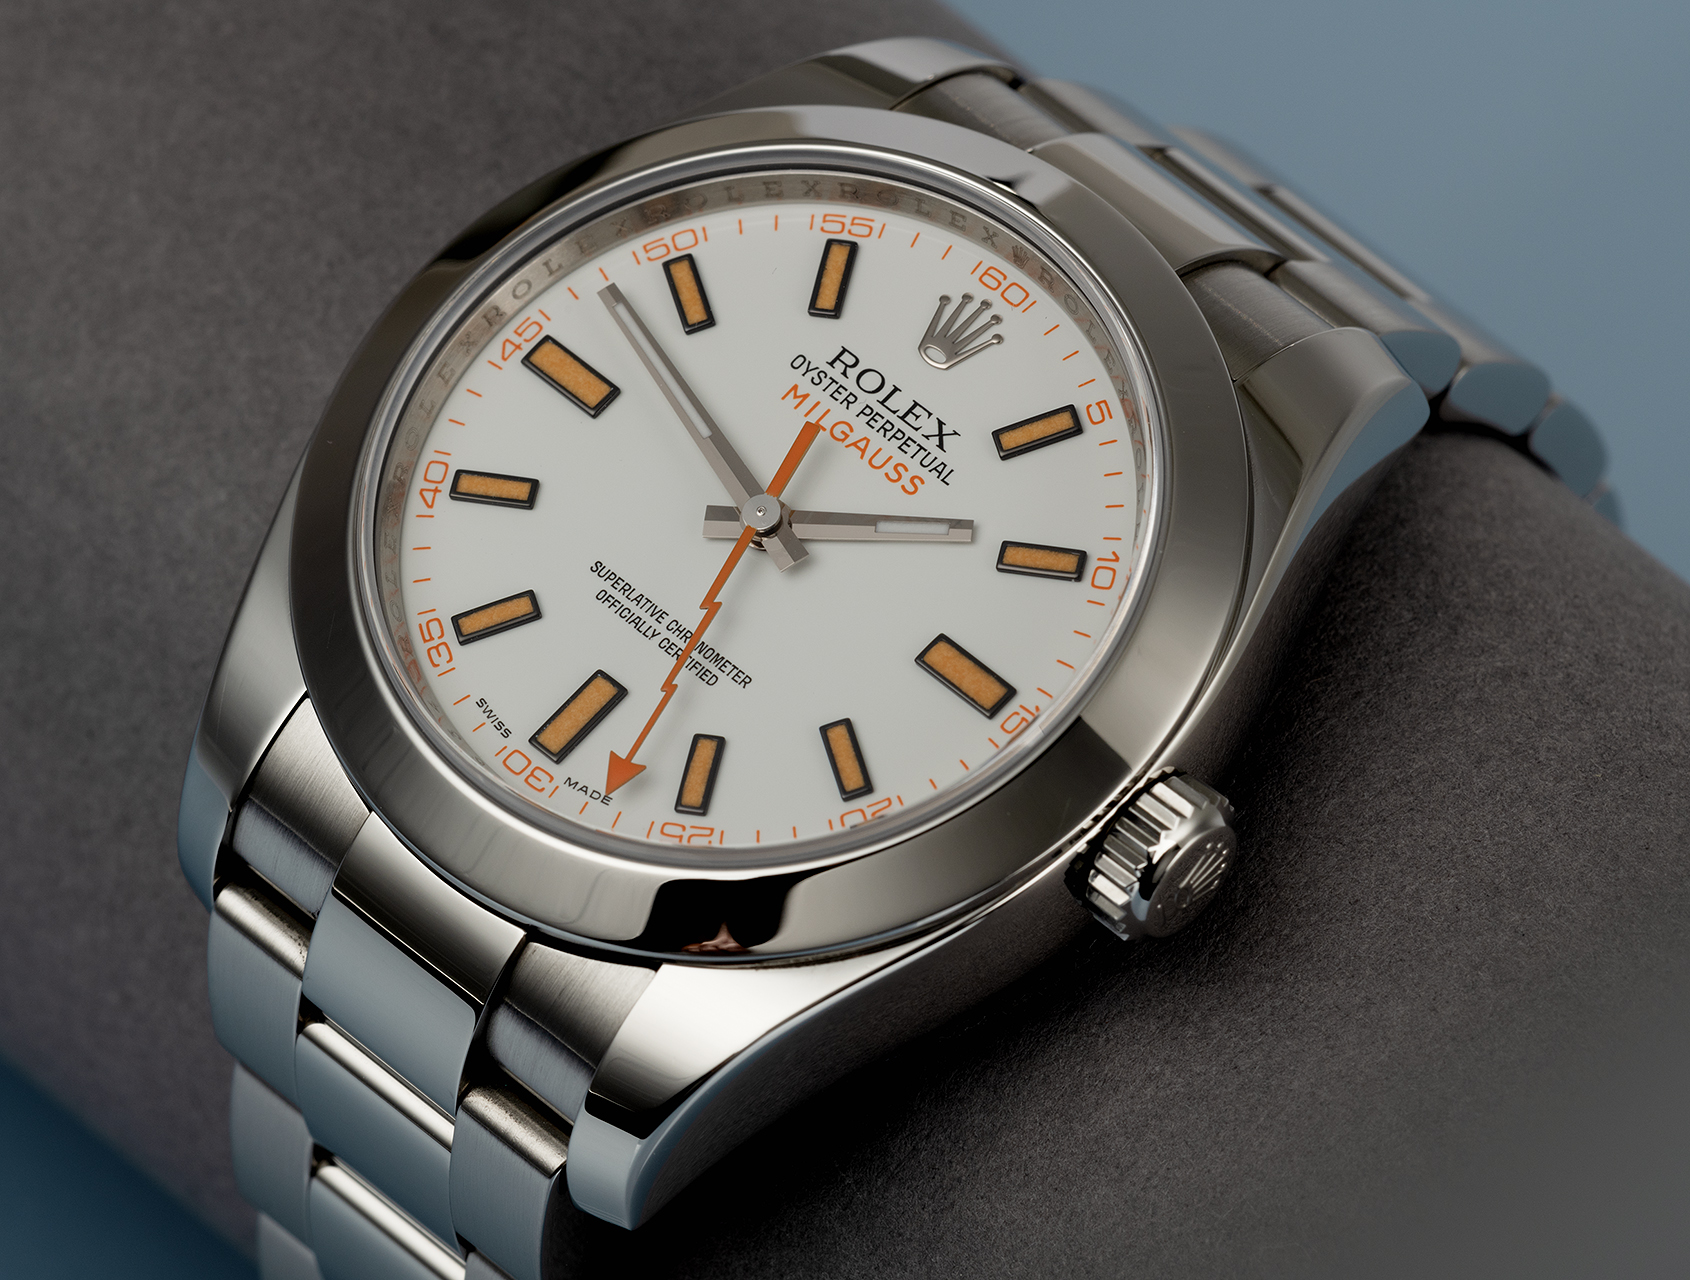 Rolex Milgauss Watches | ref 116400 | Rolex Warranty to 2024 | The ...